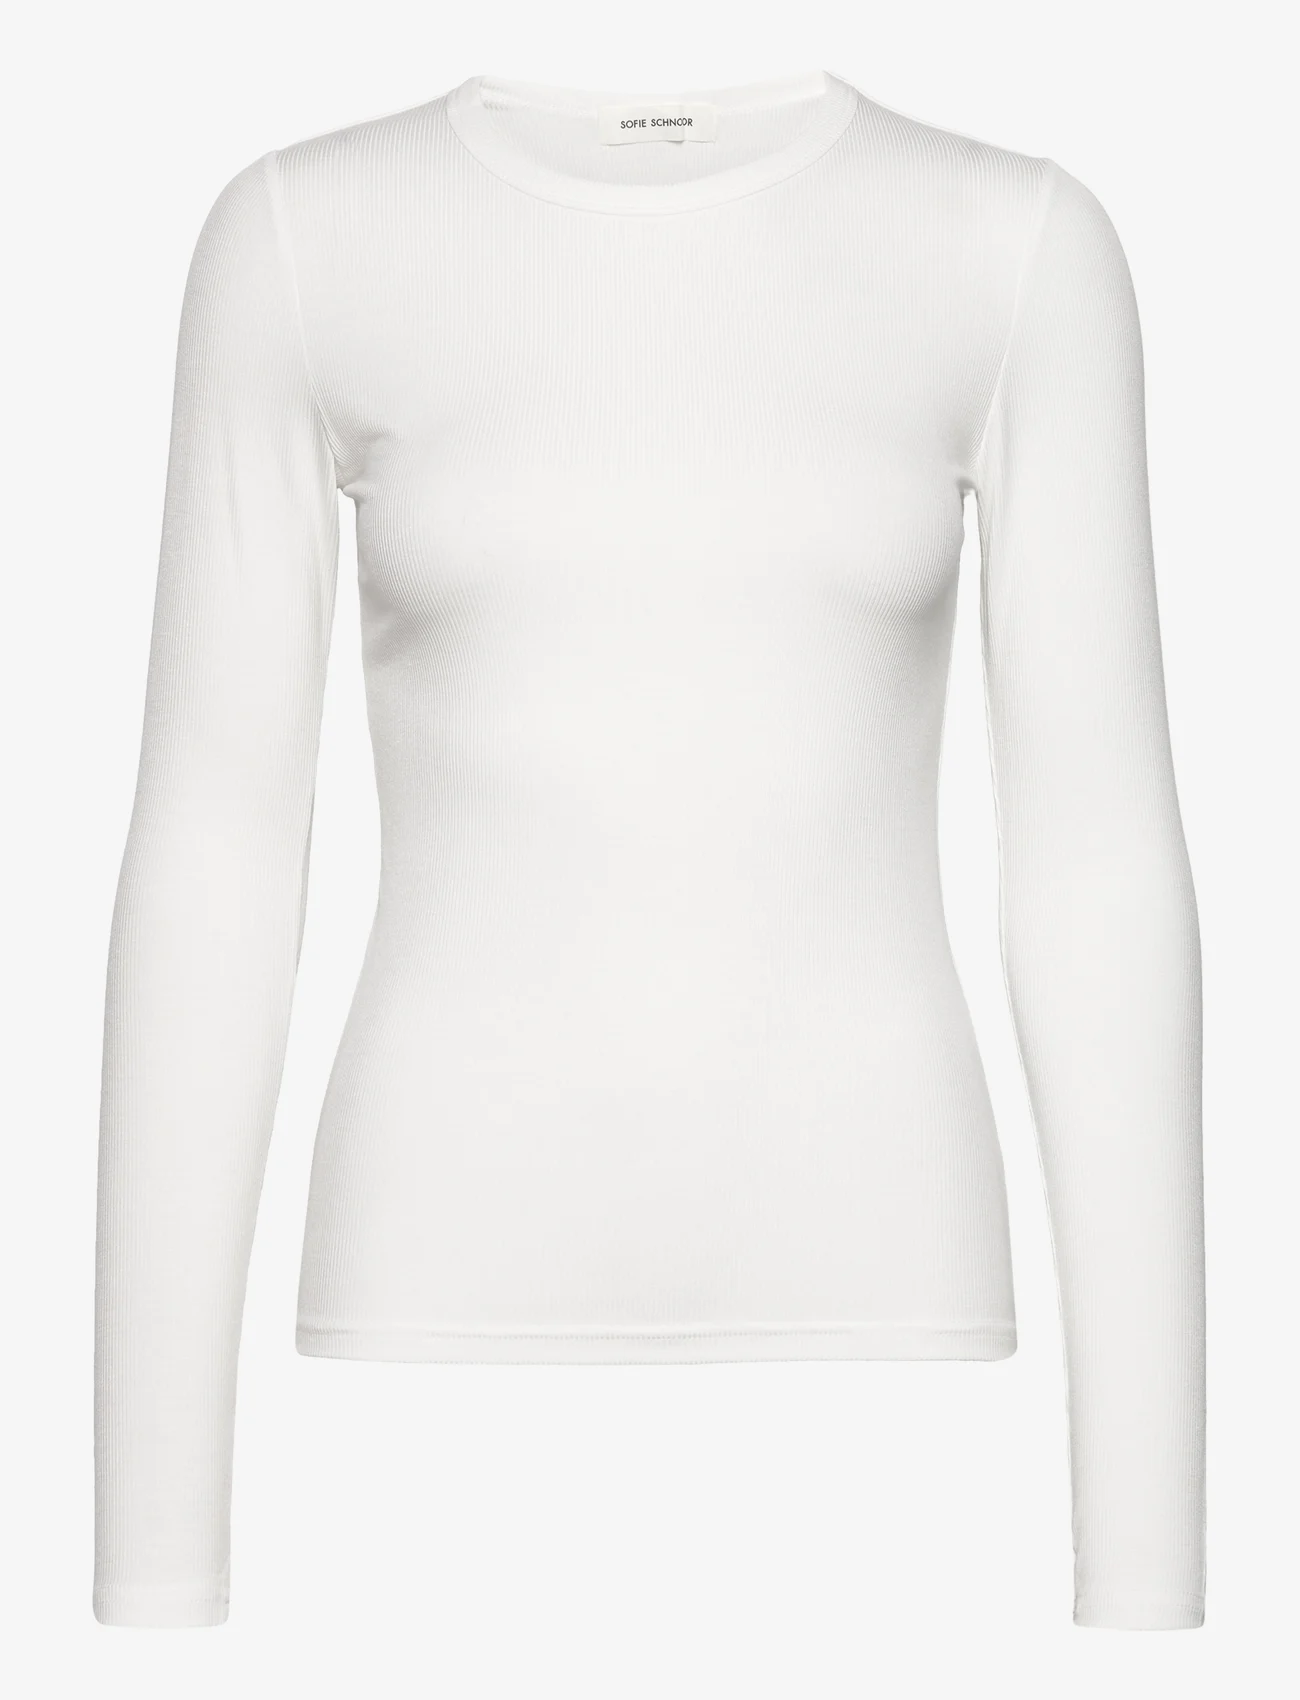 Sofie Schnoor - T-shirt long sleeve - laveste priser - white - 0